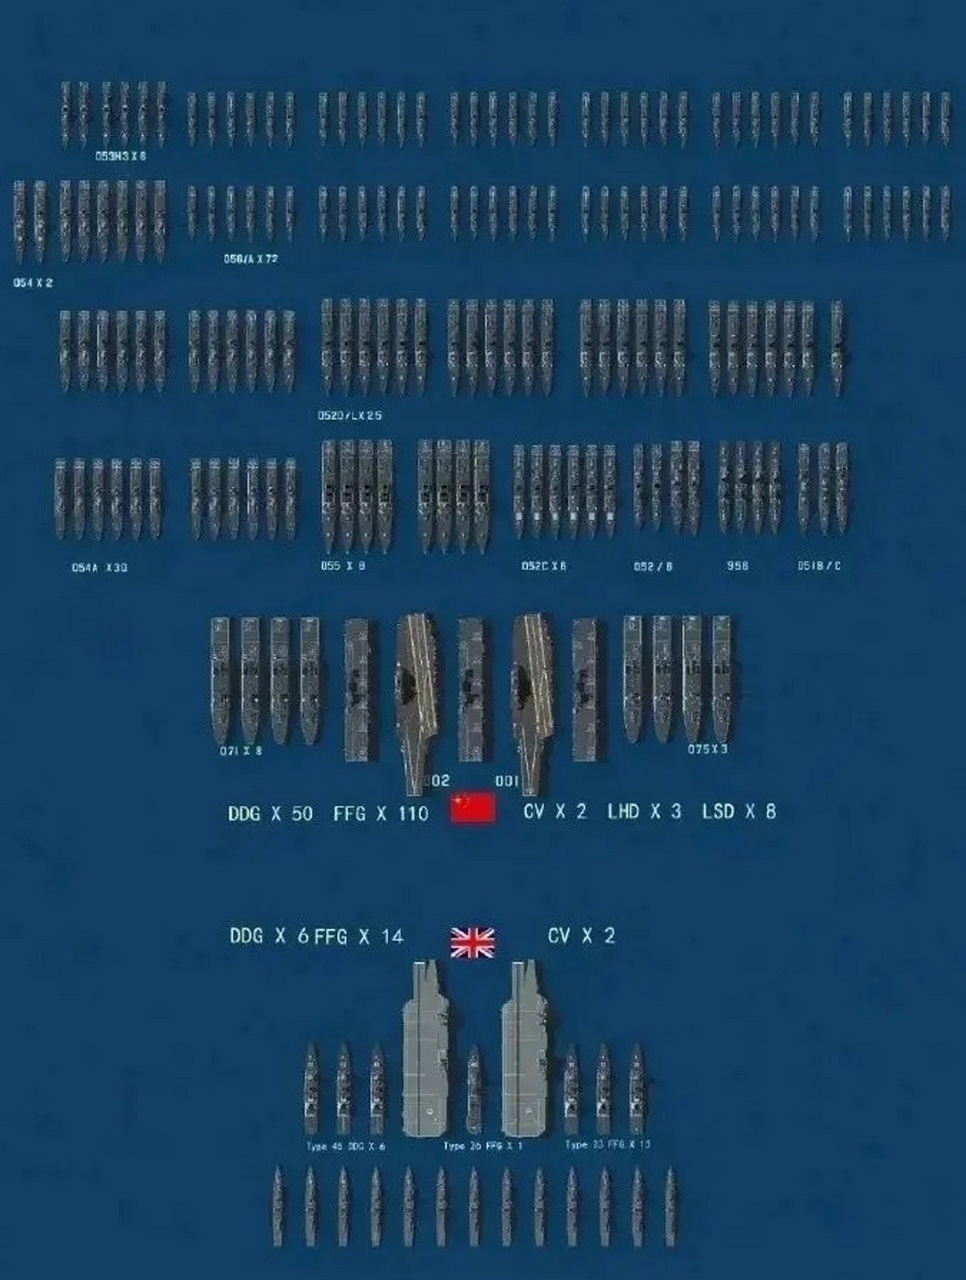 英国阅舰式对比图片